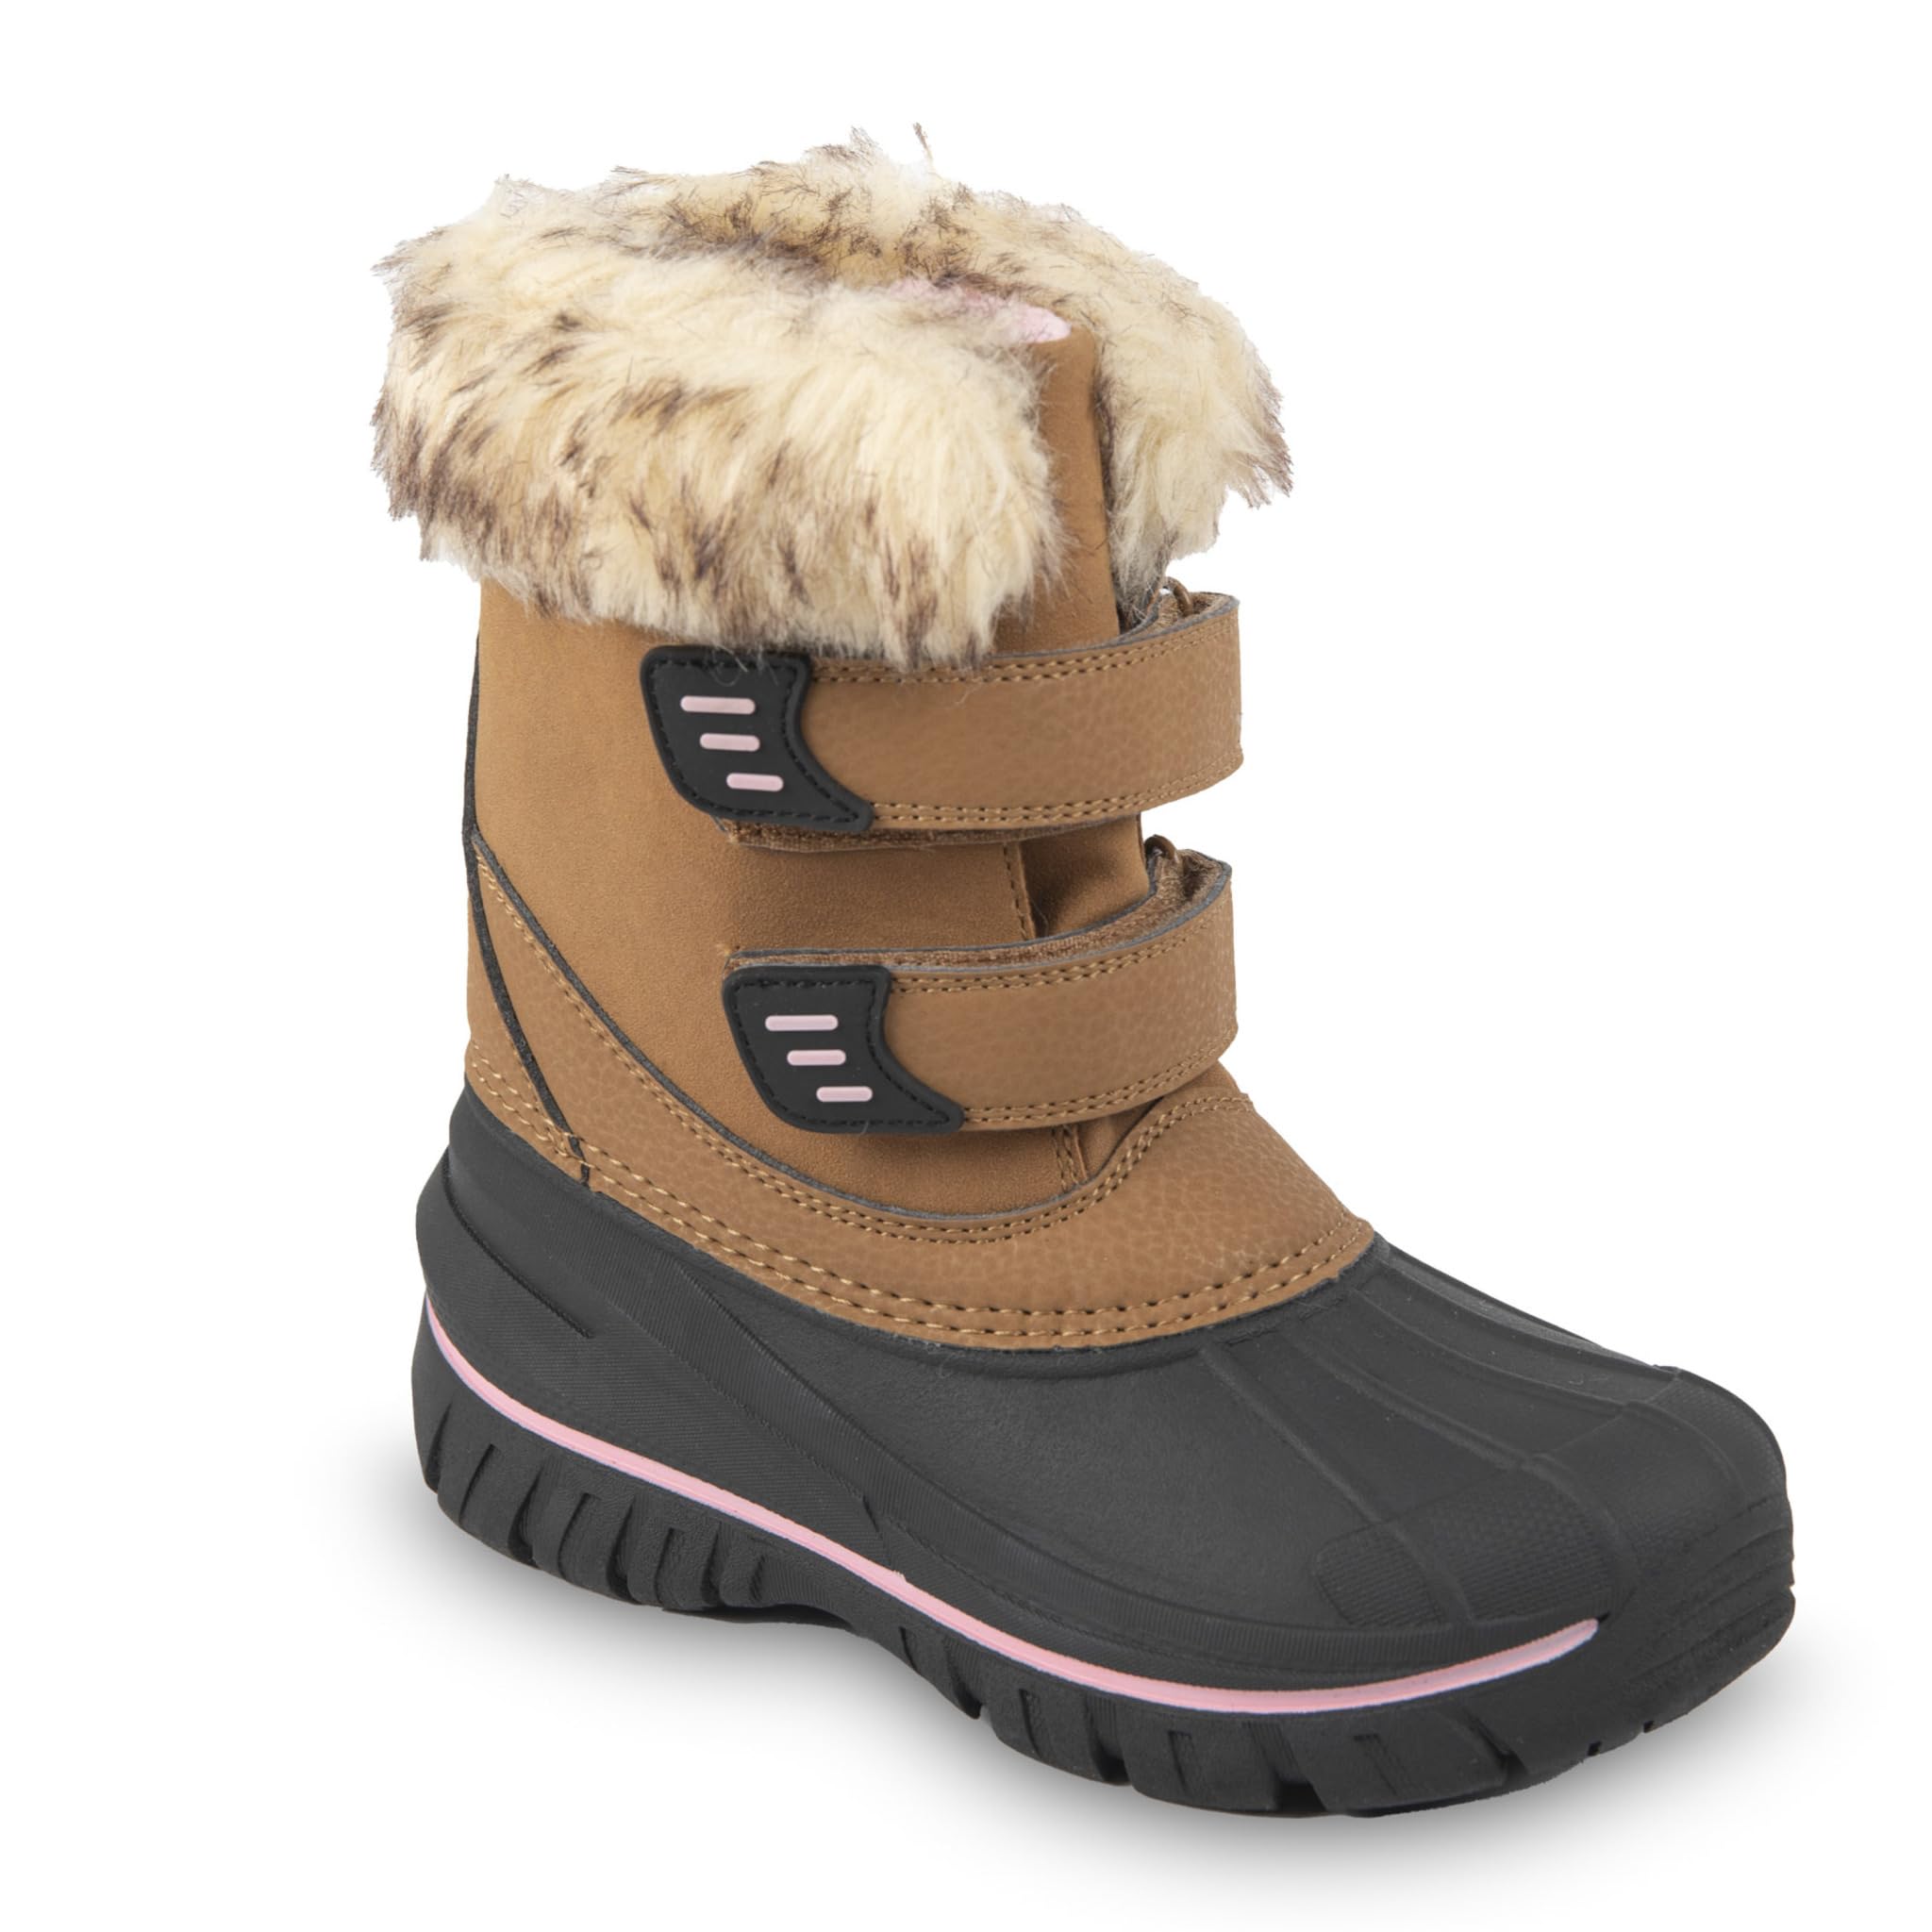 Stride Rite 360 Unisex-Child Betty Snow Boot